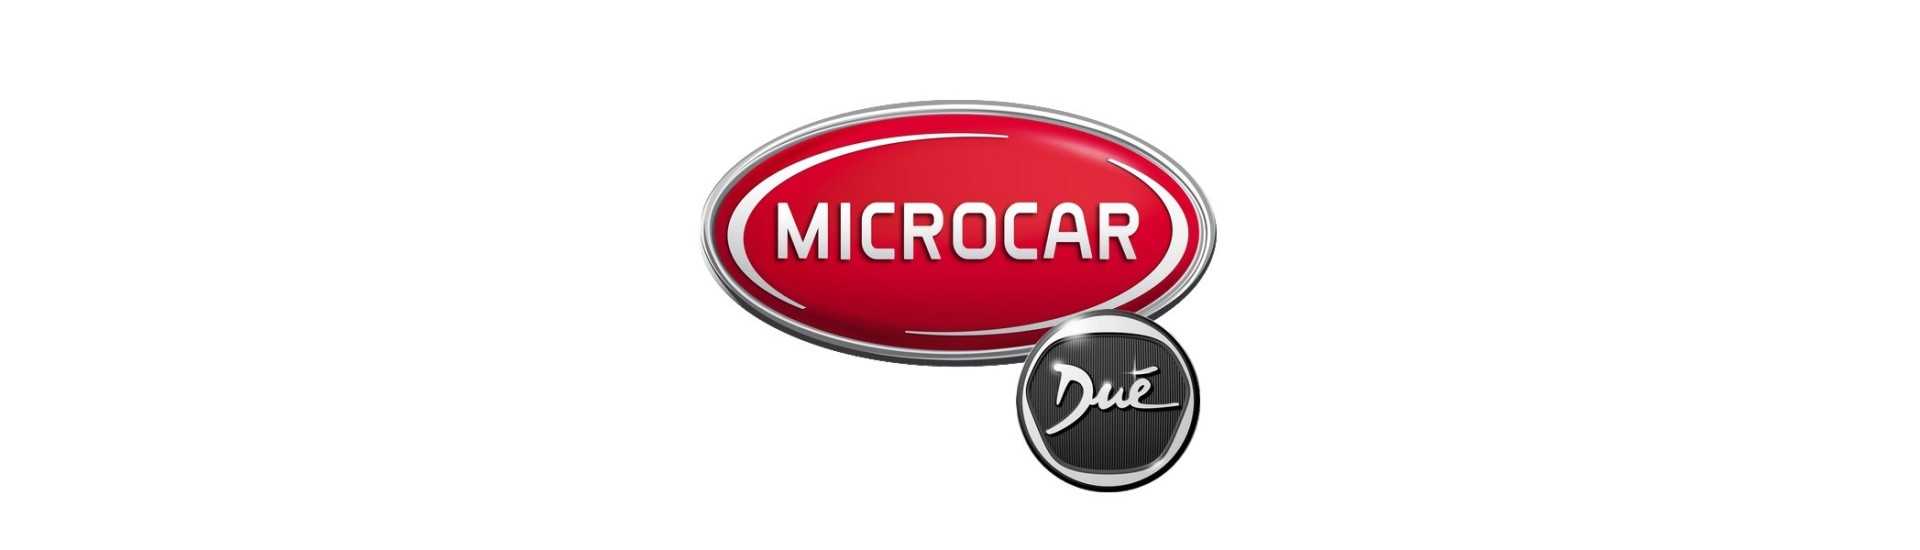 Coluna de direção ao melhor preço do carro sem uma permissão Microcar Dué